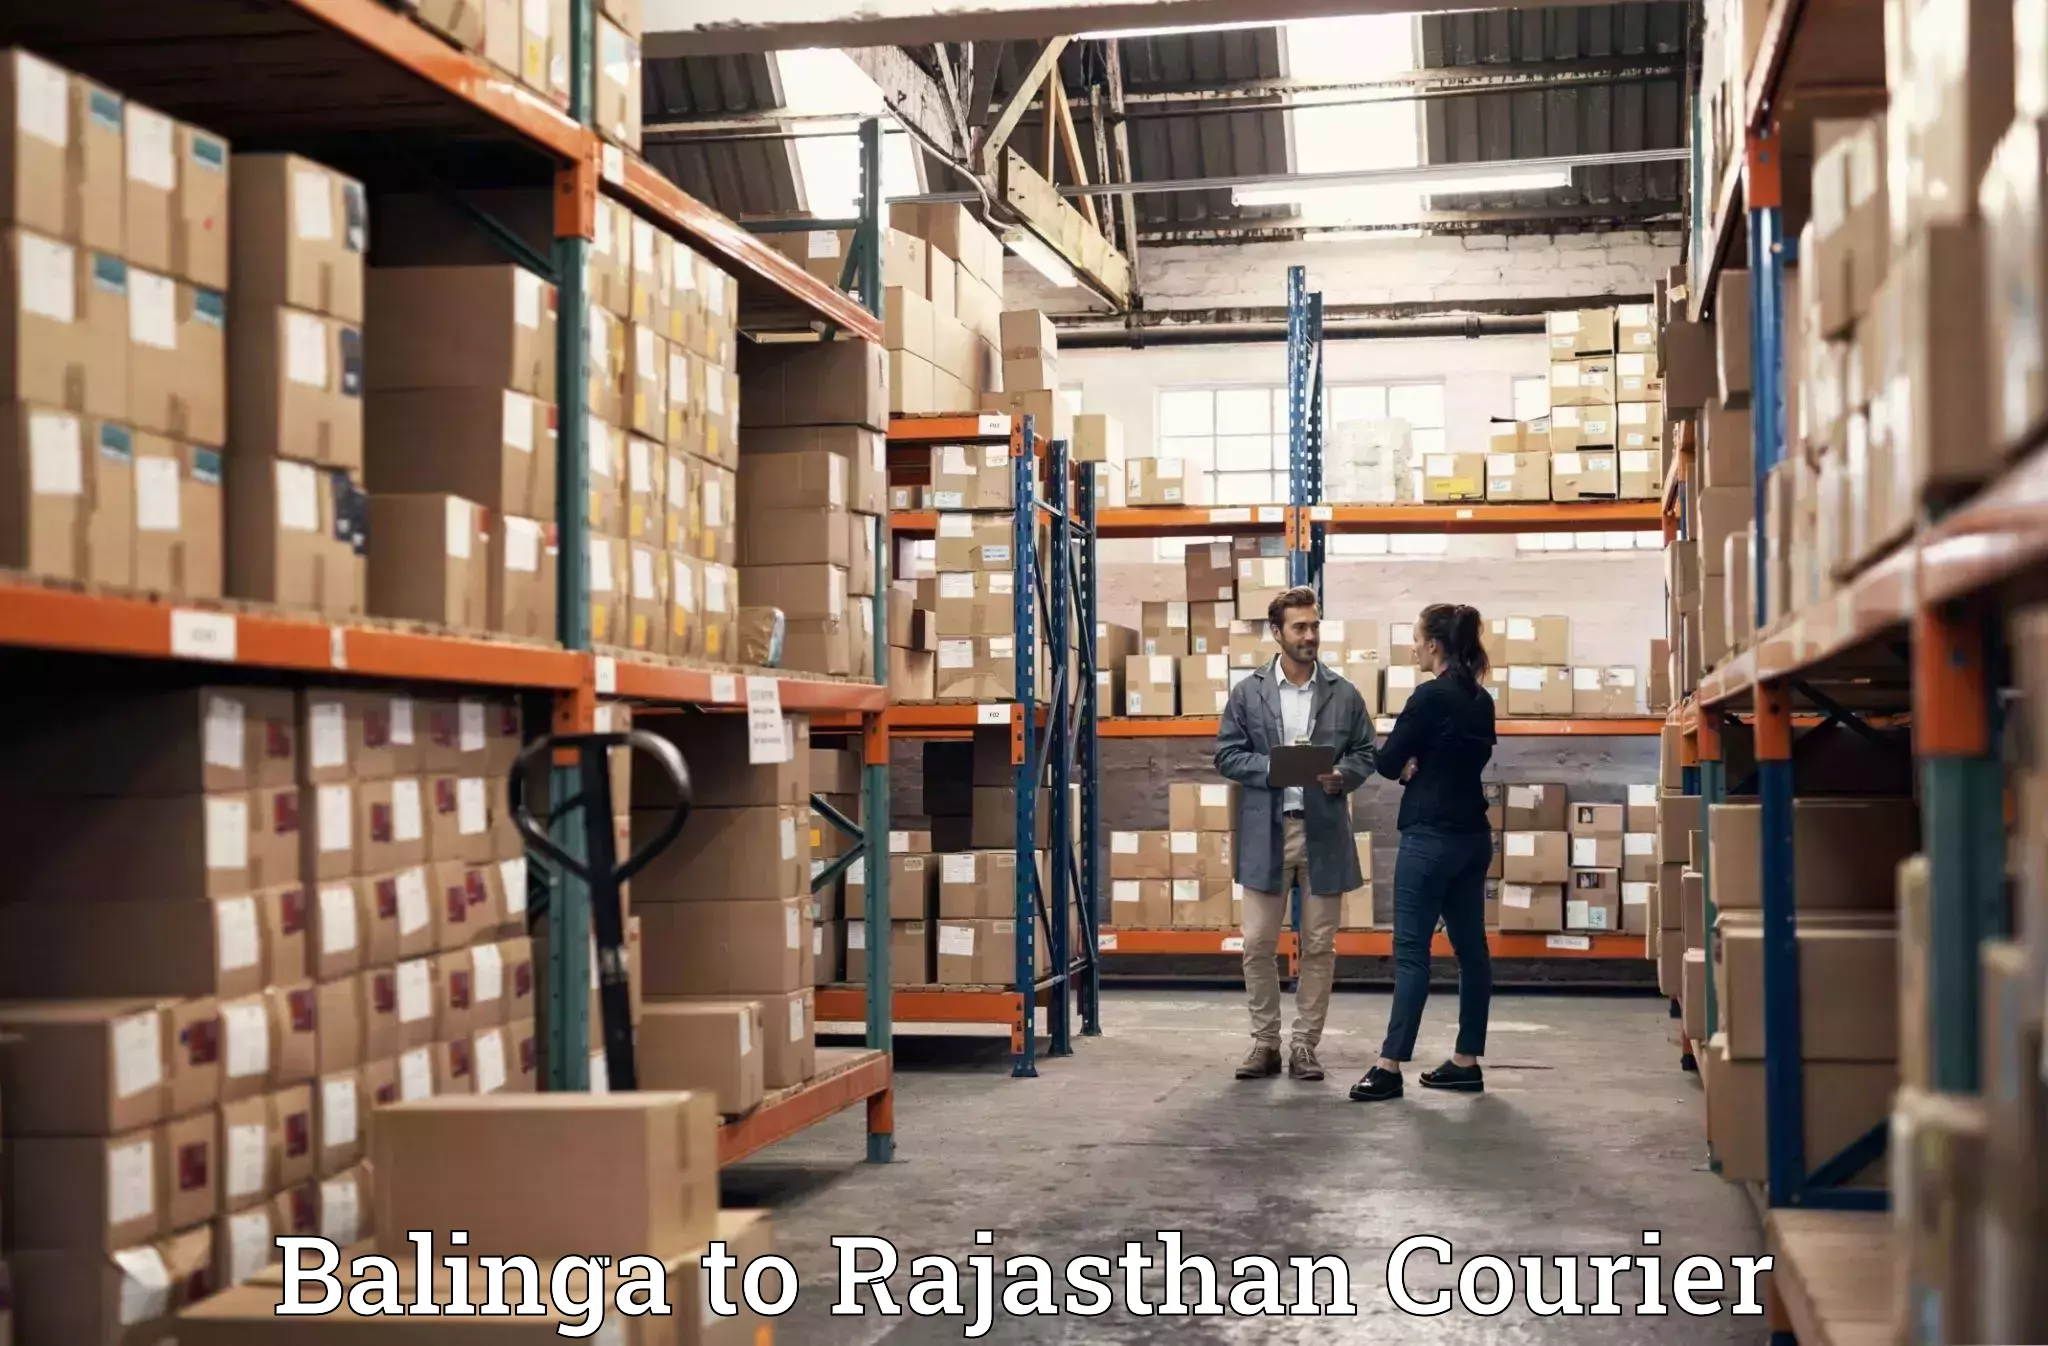 Furniture transport and storage Balinga to Pokhran